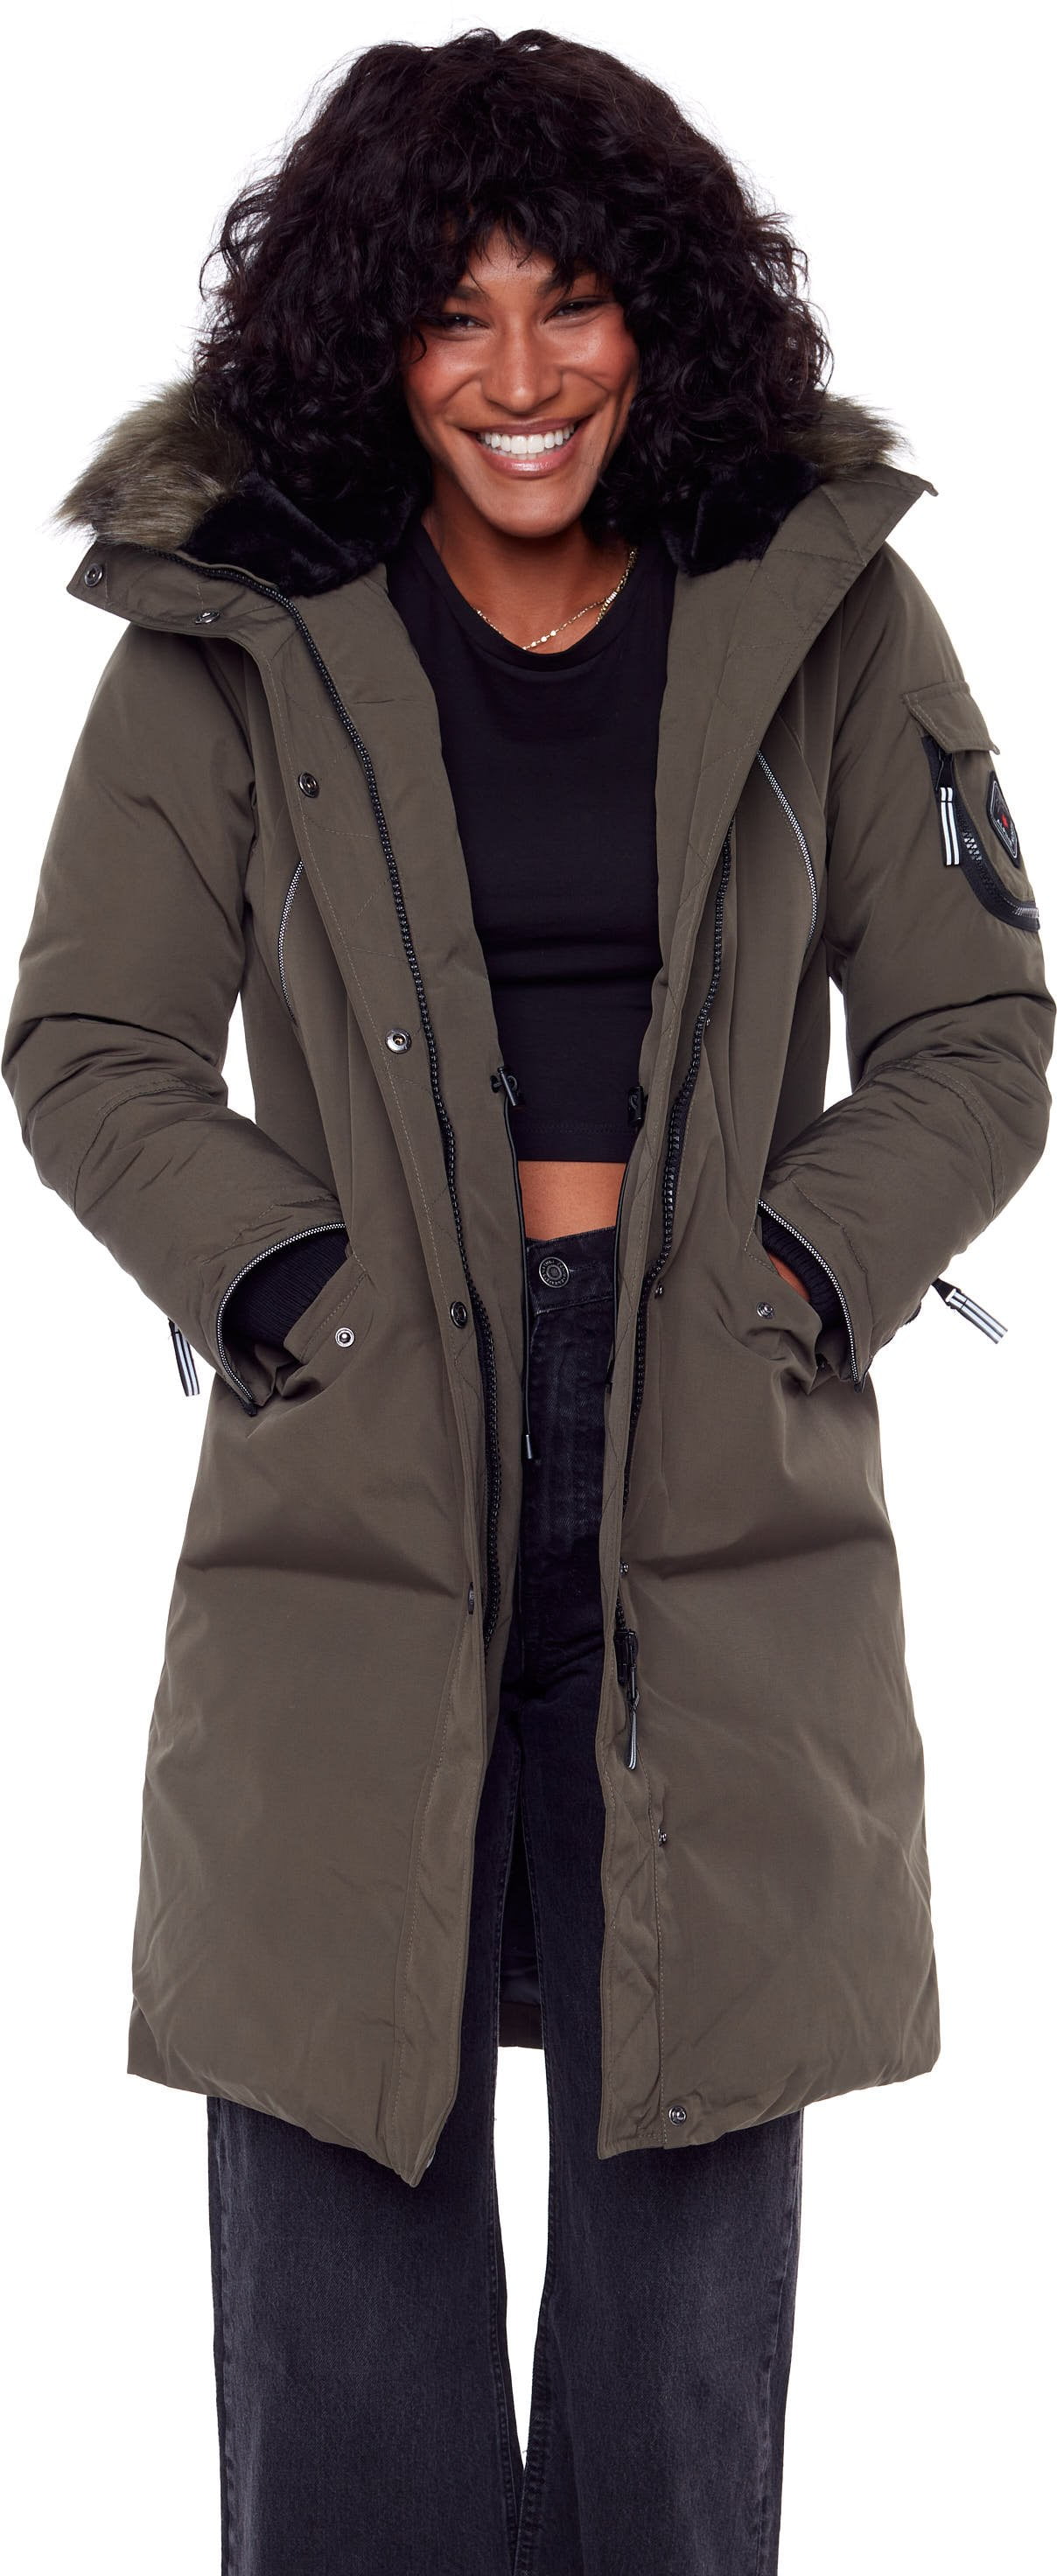 Voorkeursbehandeling accent Vergelijken Women's Navy Vegan Down Long Parka Jacket - Water Repellent, Windproof,  Warm Insulated Winter Coat with Faux Fur Hood - Walmart.com